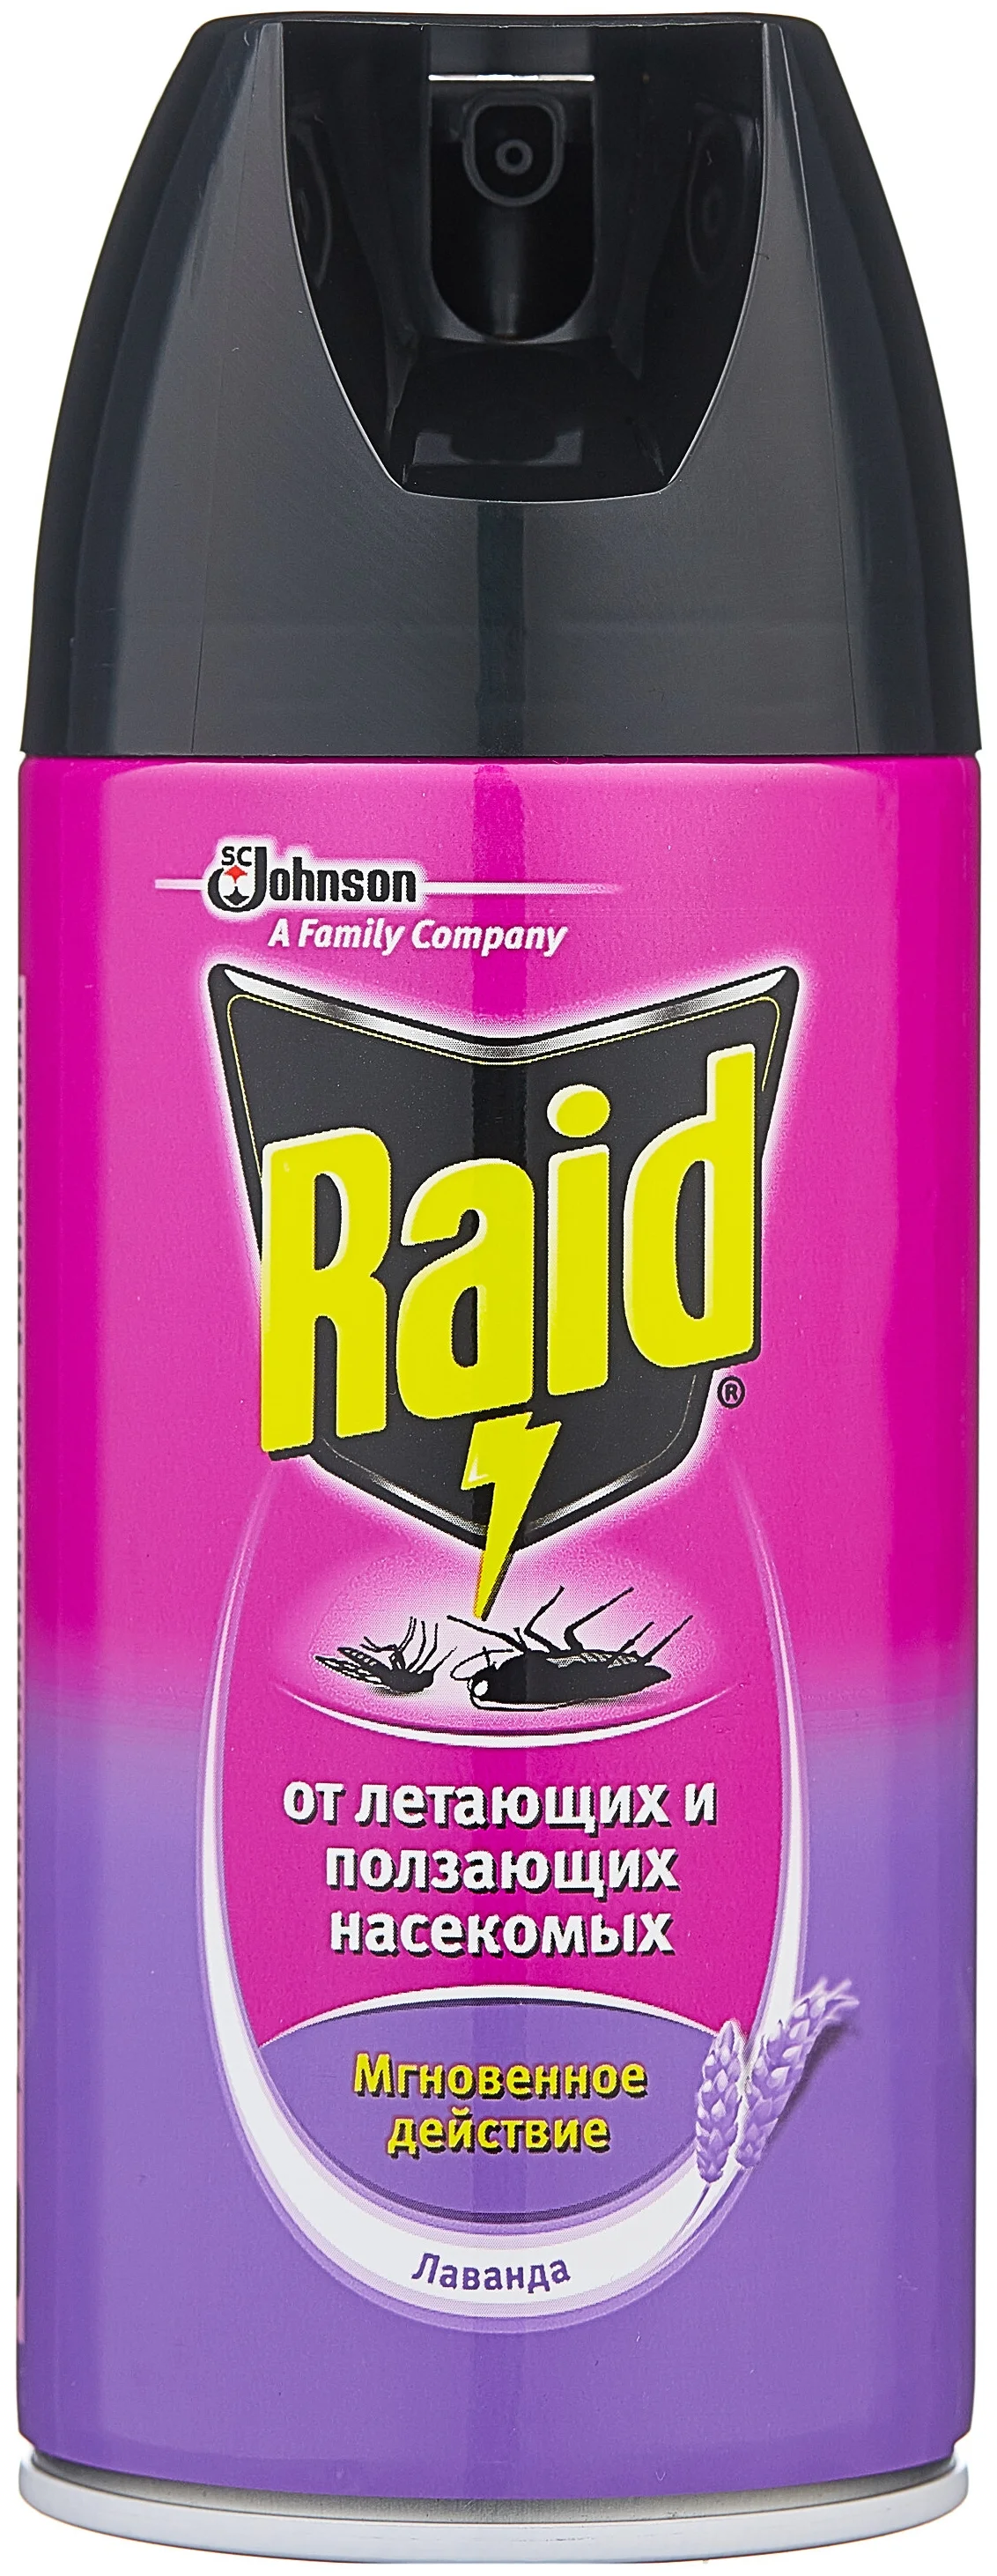 Raid - назначение: уничтожение насекомых